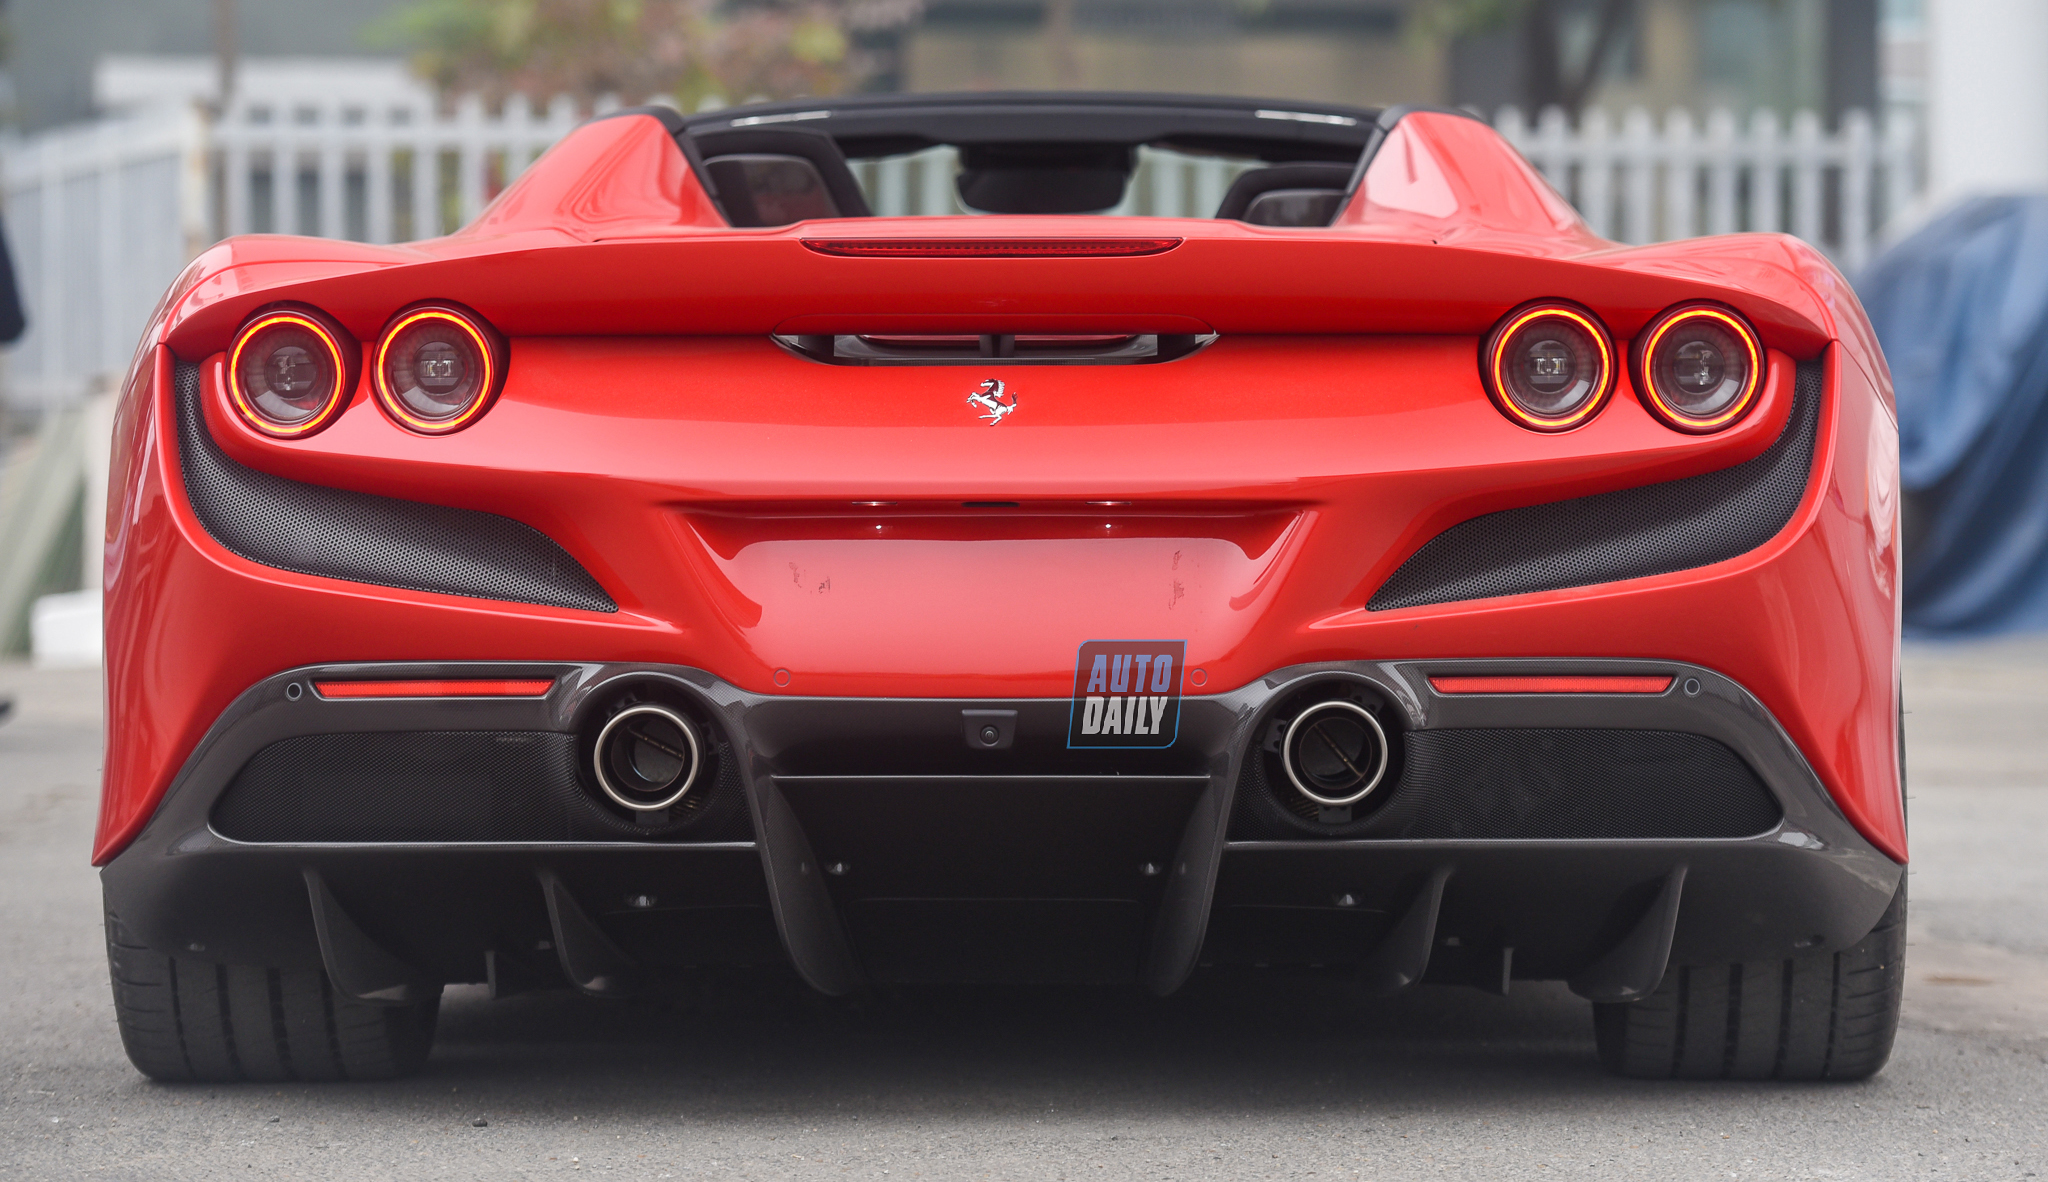 Chi tiết siêu xe Ferrari F8 Spider giá hơn 1 triệu USD tại Việt Nam